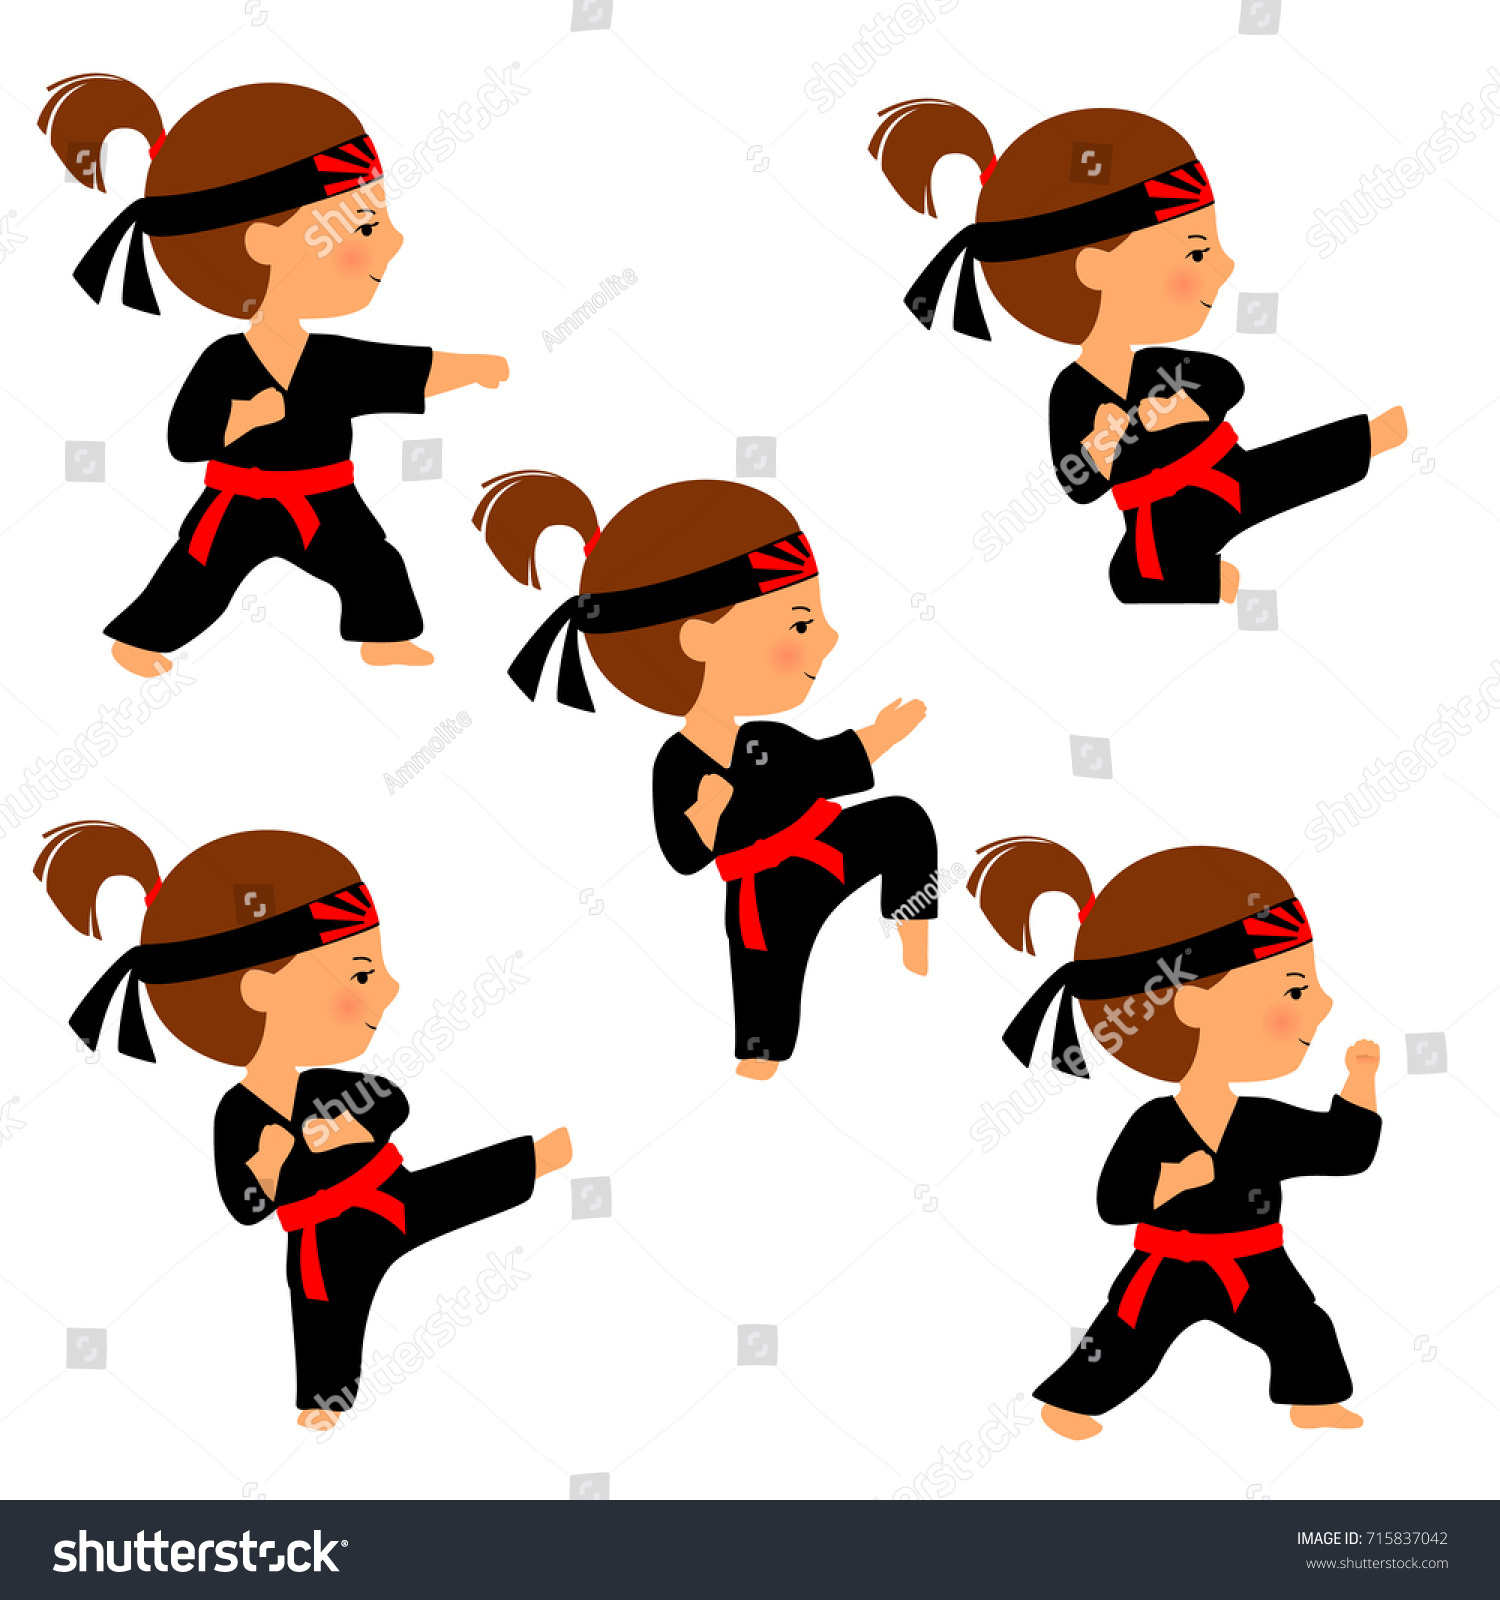 白い背景に空手少女のベクターイラスト 漫画風の空手ポーズのセット 女の子は蹴りの練習をする 赤帯と頭帯の黒い着物に 朝日 の記号 のベクター画像素材 ロイヤリティフリー